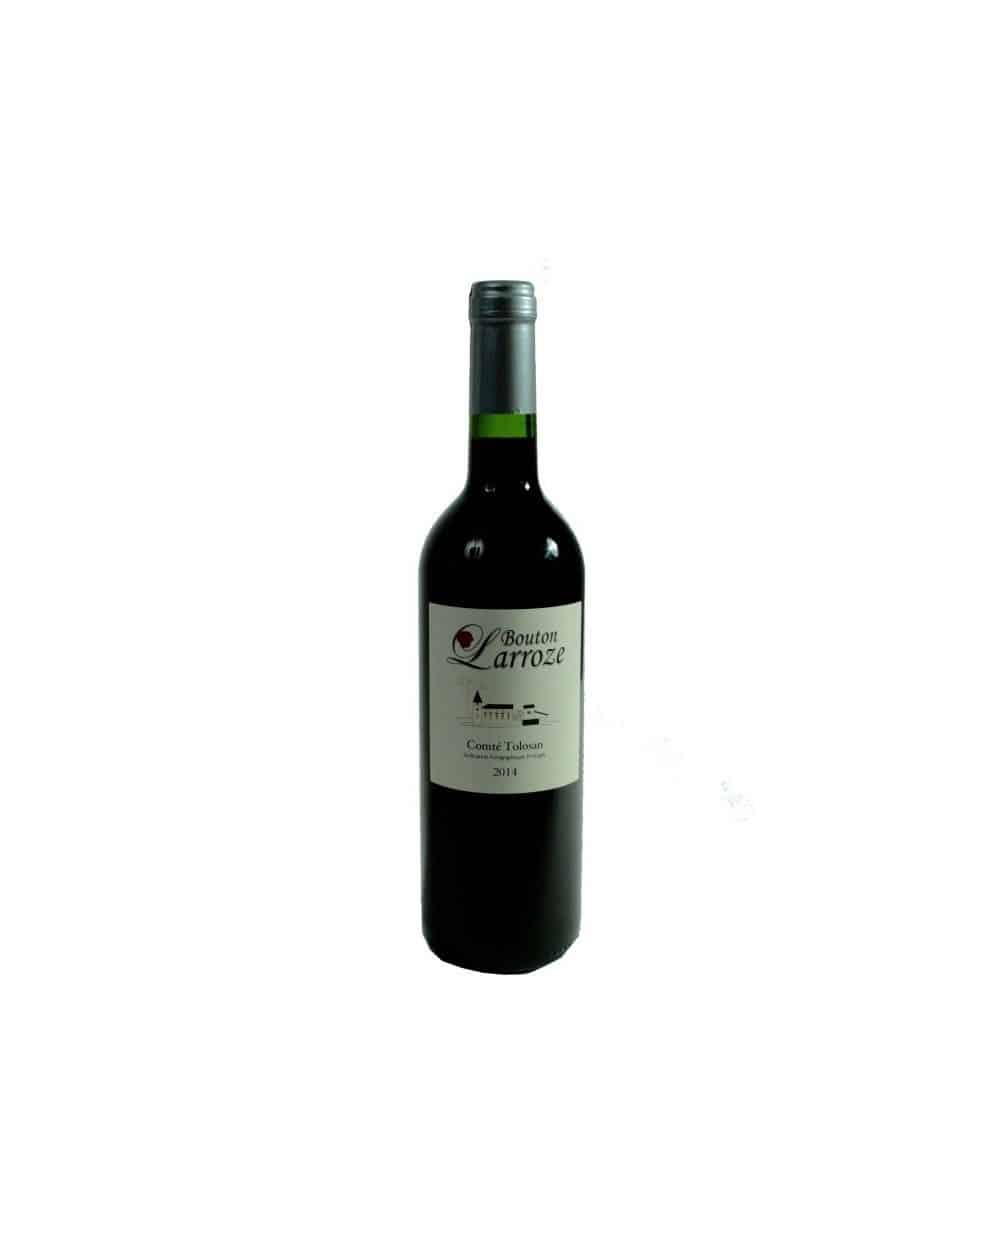 Vin rouge "Bouton Larroze" 75cl